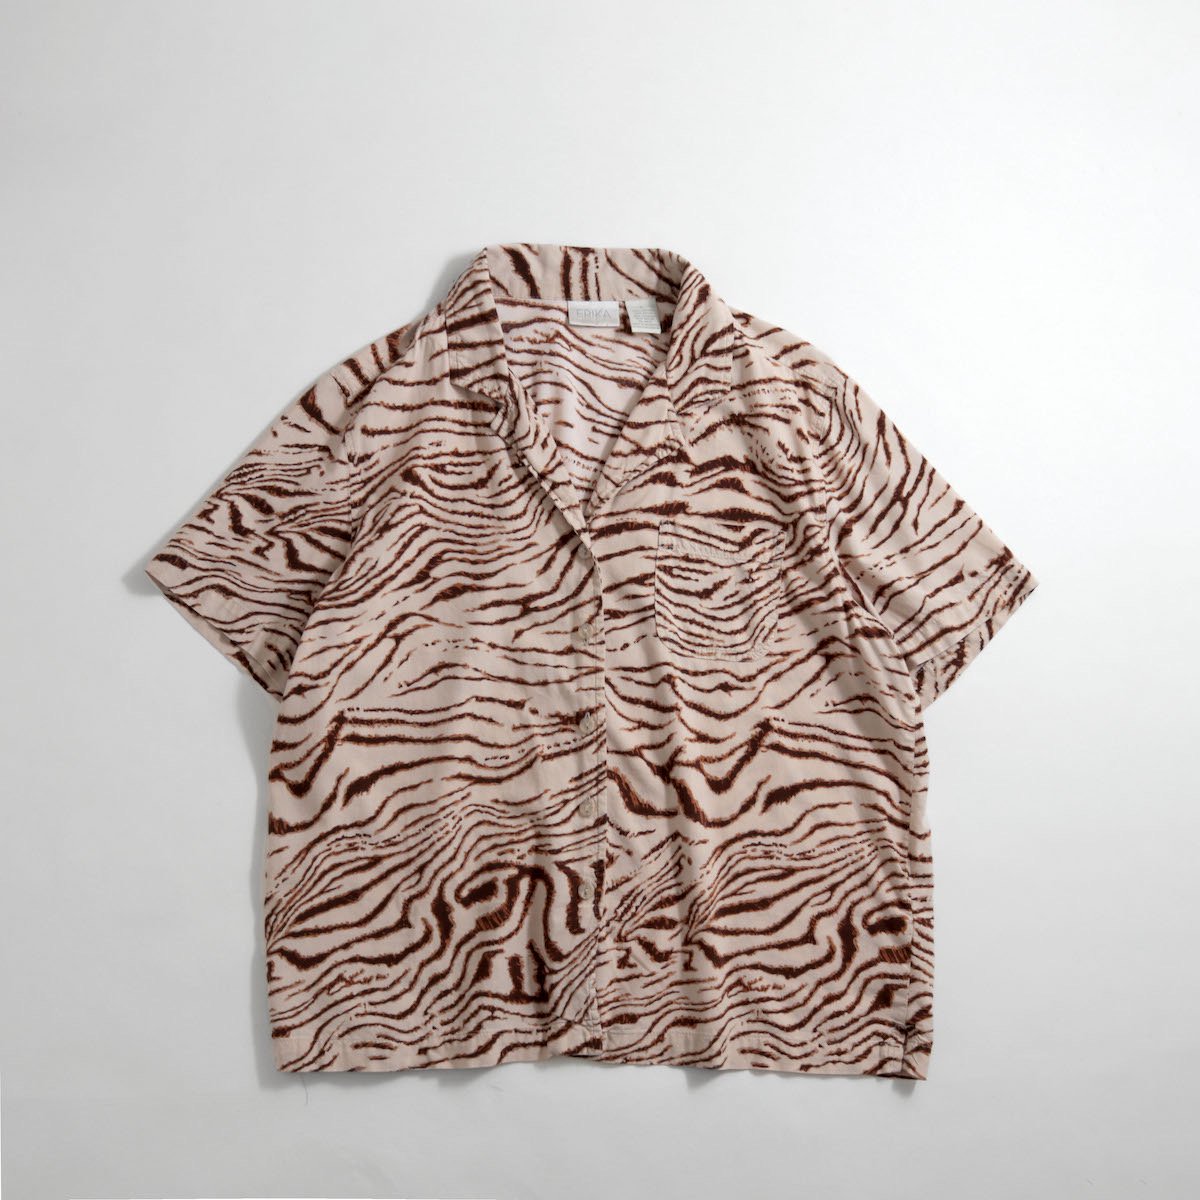 レディース] 1990s~ タイガーパターン オープンカラーシャツ 虎柄 半袖